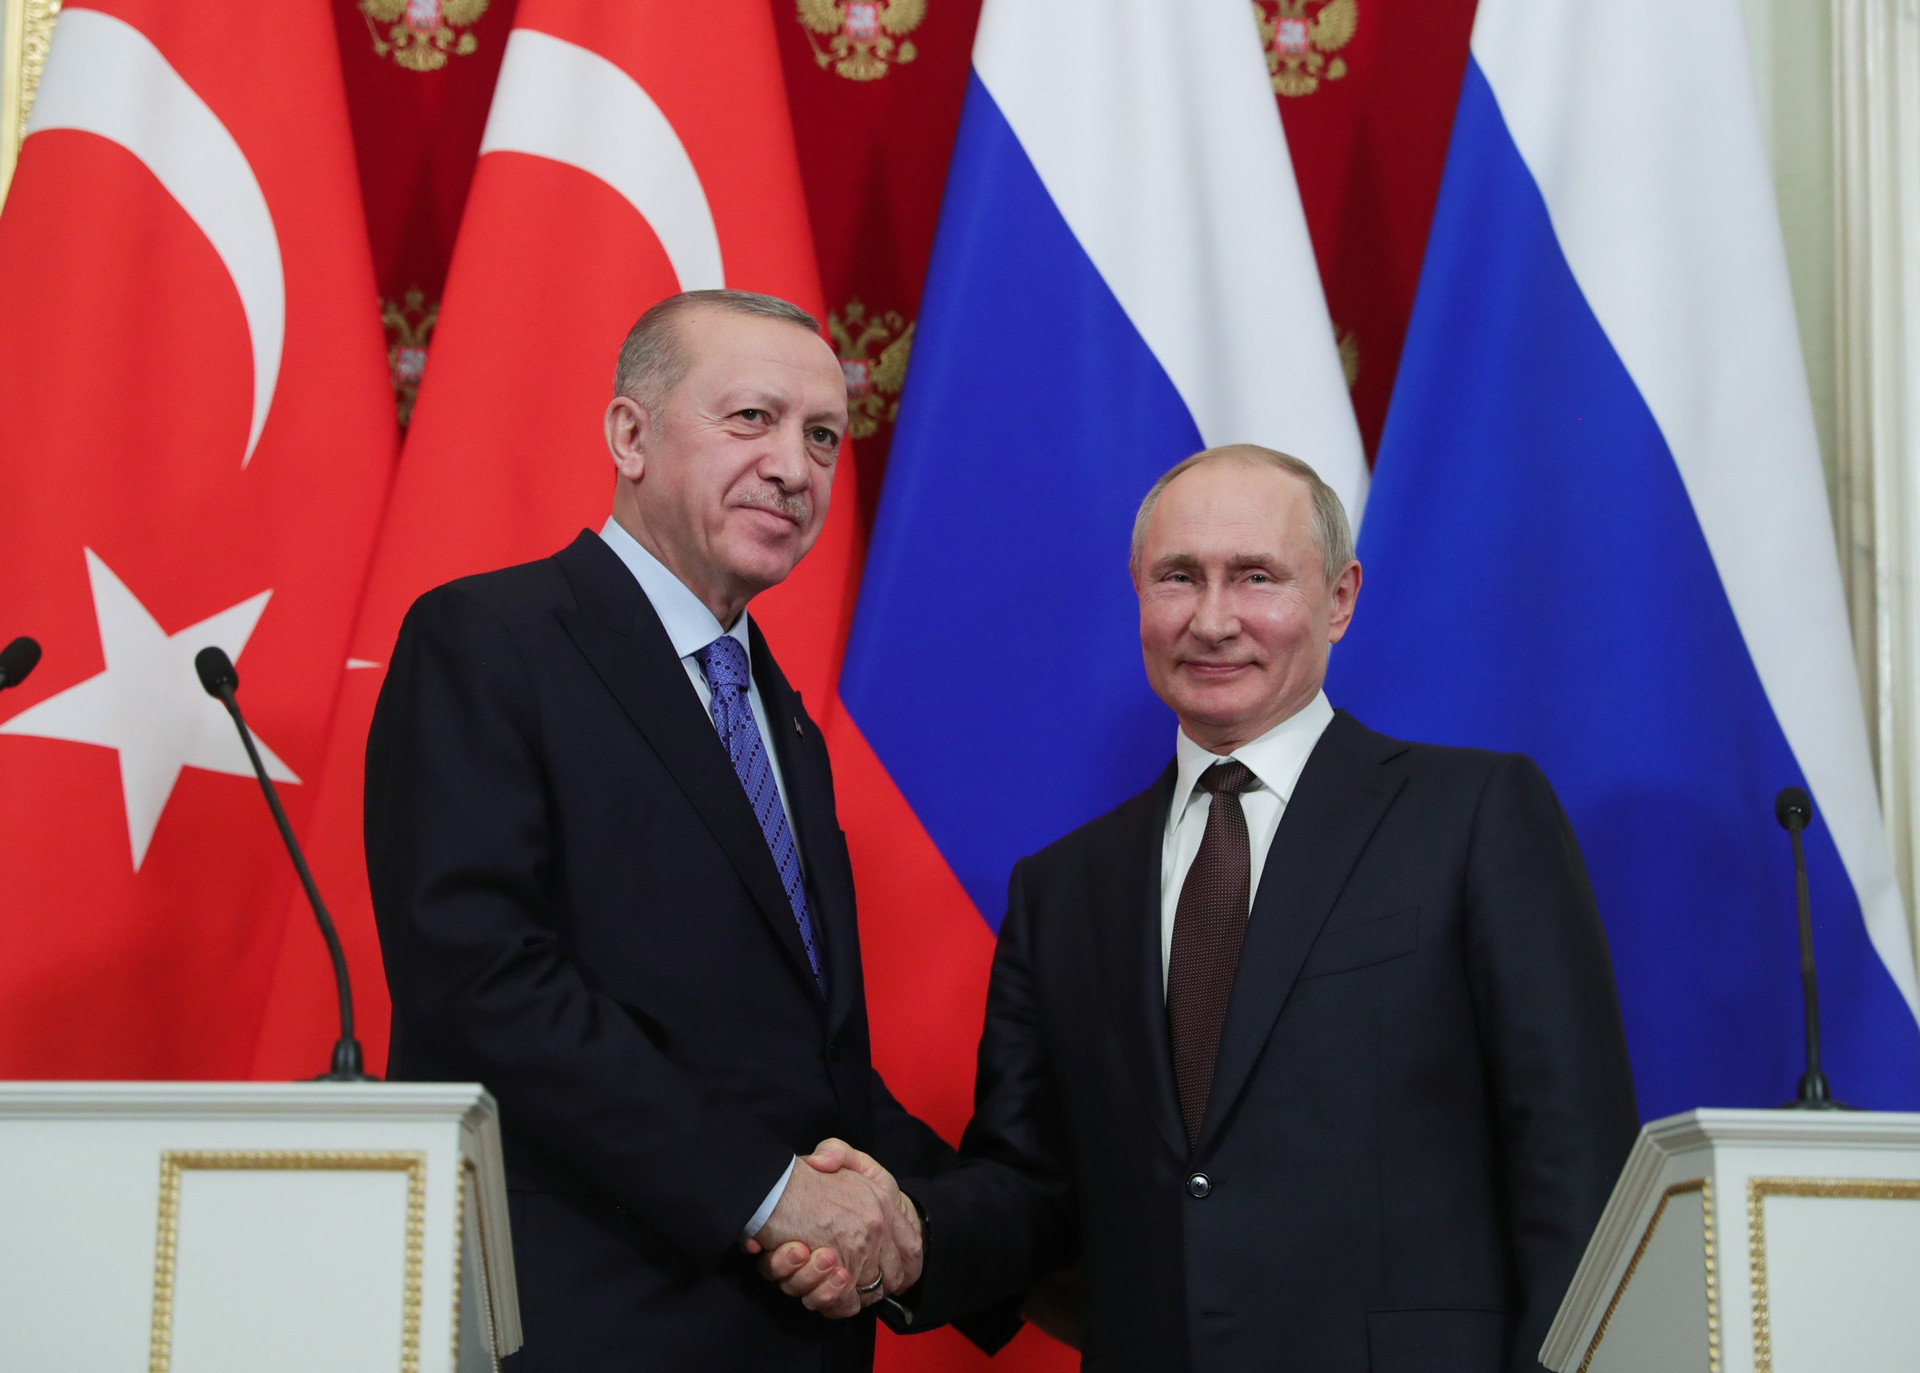 Tổng thống Nga Vladimir Putin và Tổng thống Thổ Nhĩ Kỳ Recep Tayyip Erdogan. Ảnh: Daily Sabah.